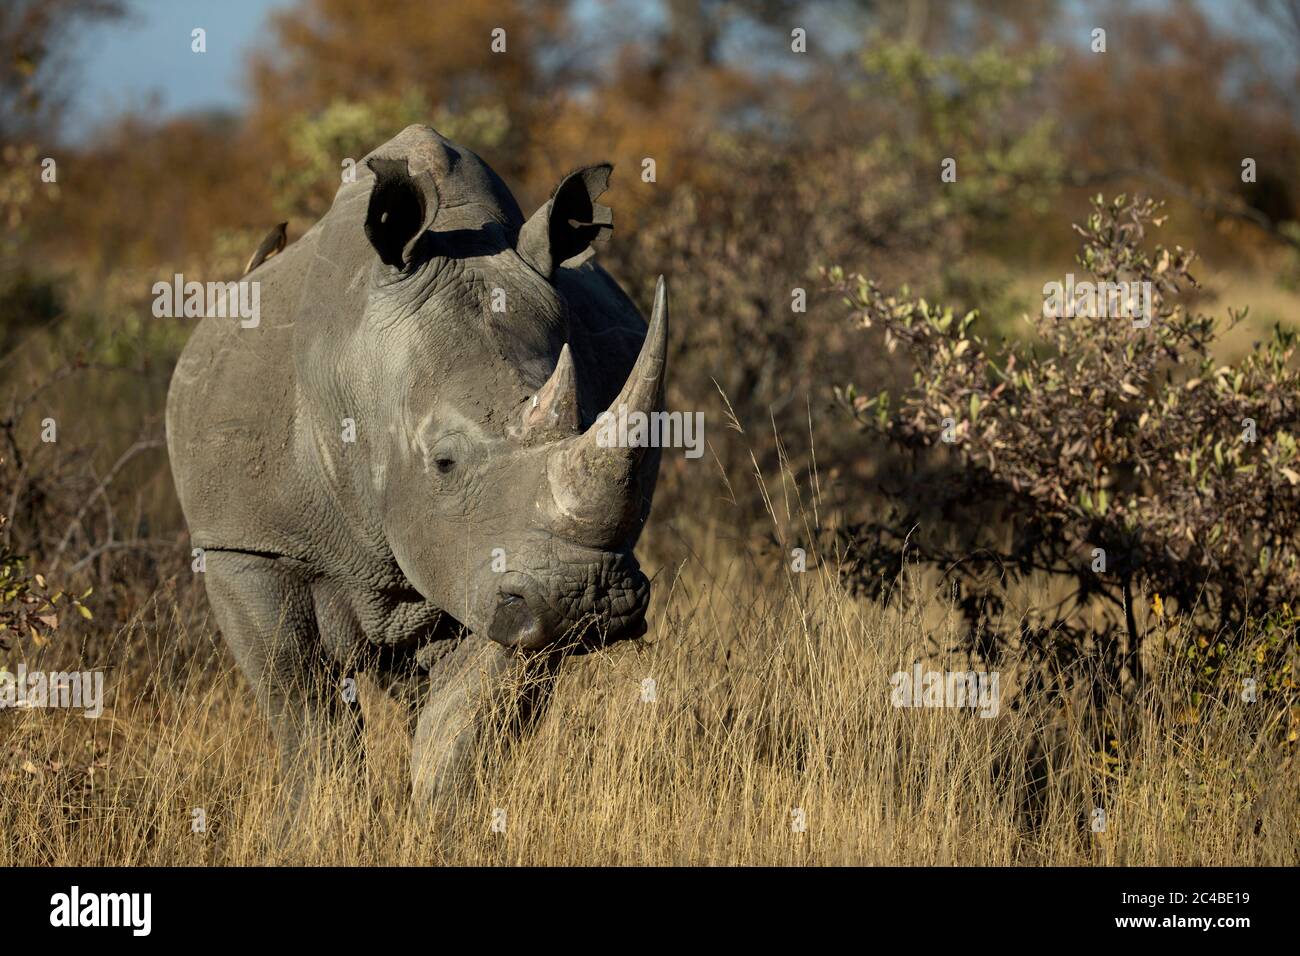 White rhinoceros ( ceratotherium simum ) standing in the bush Stock Photo